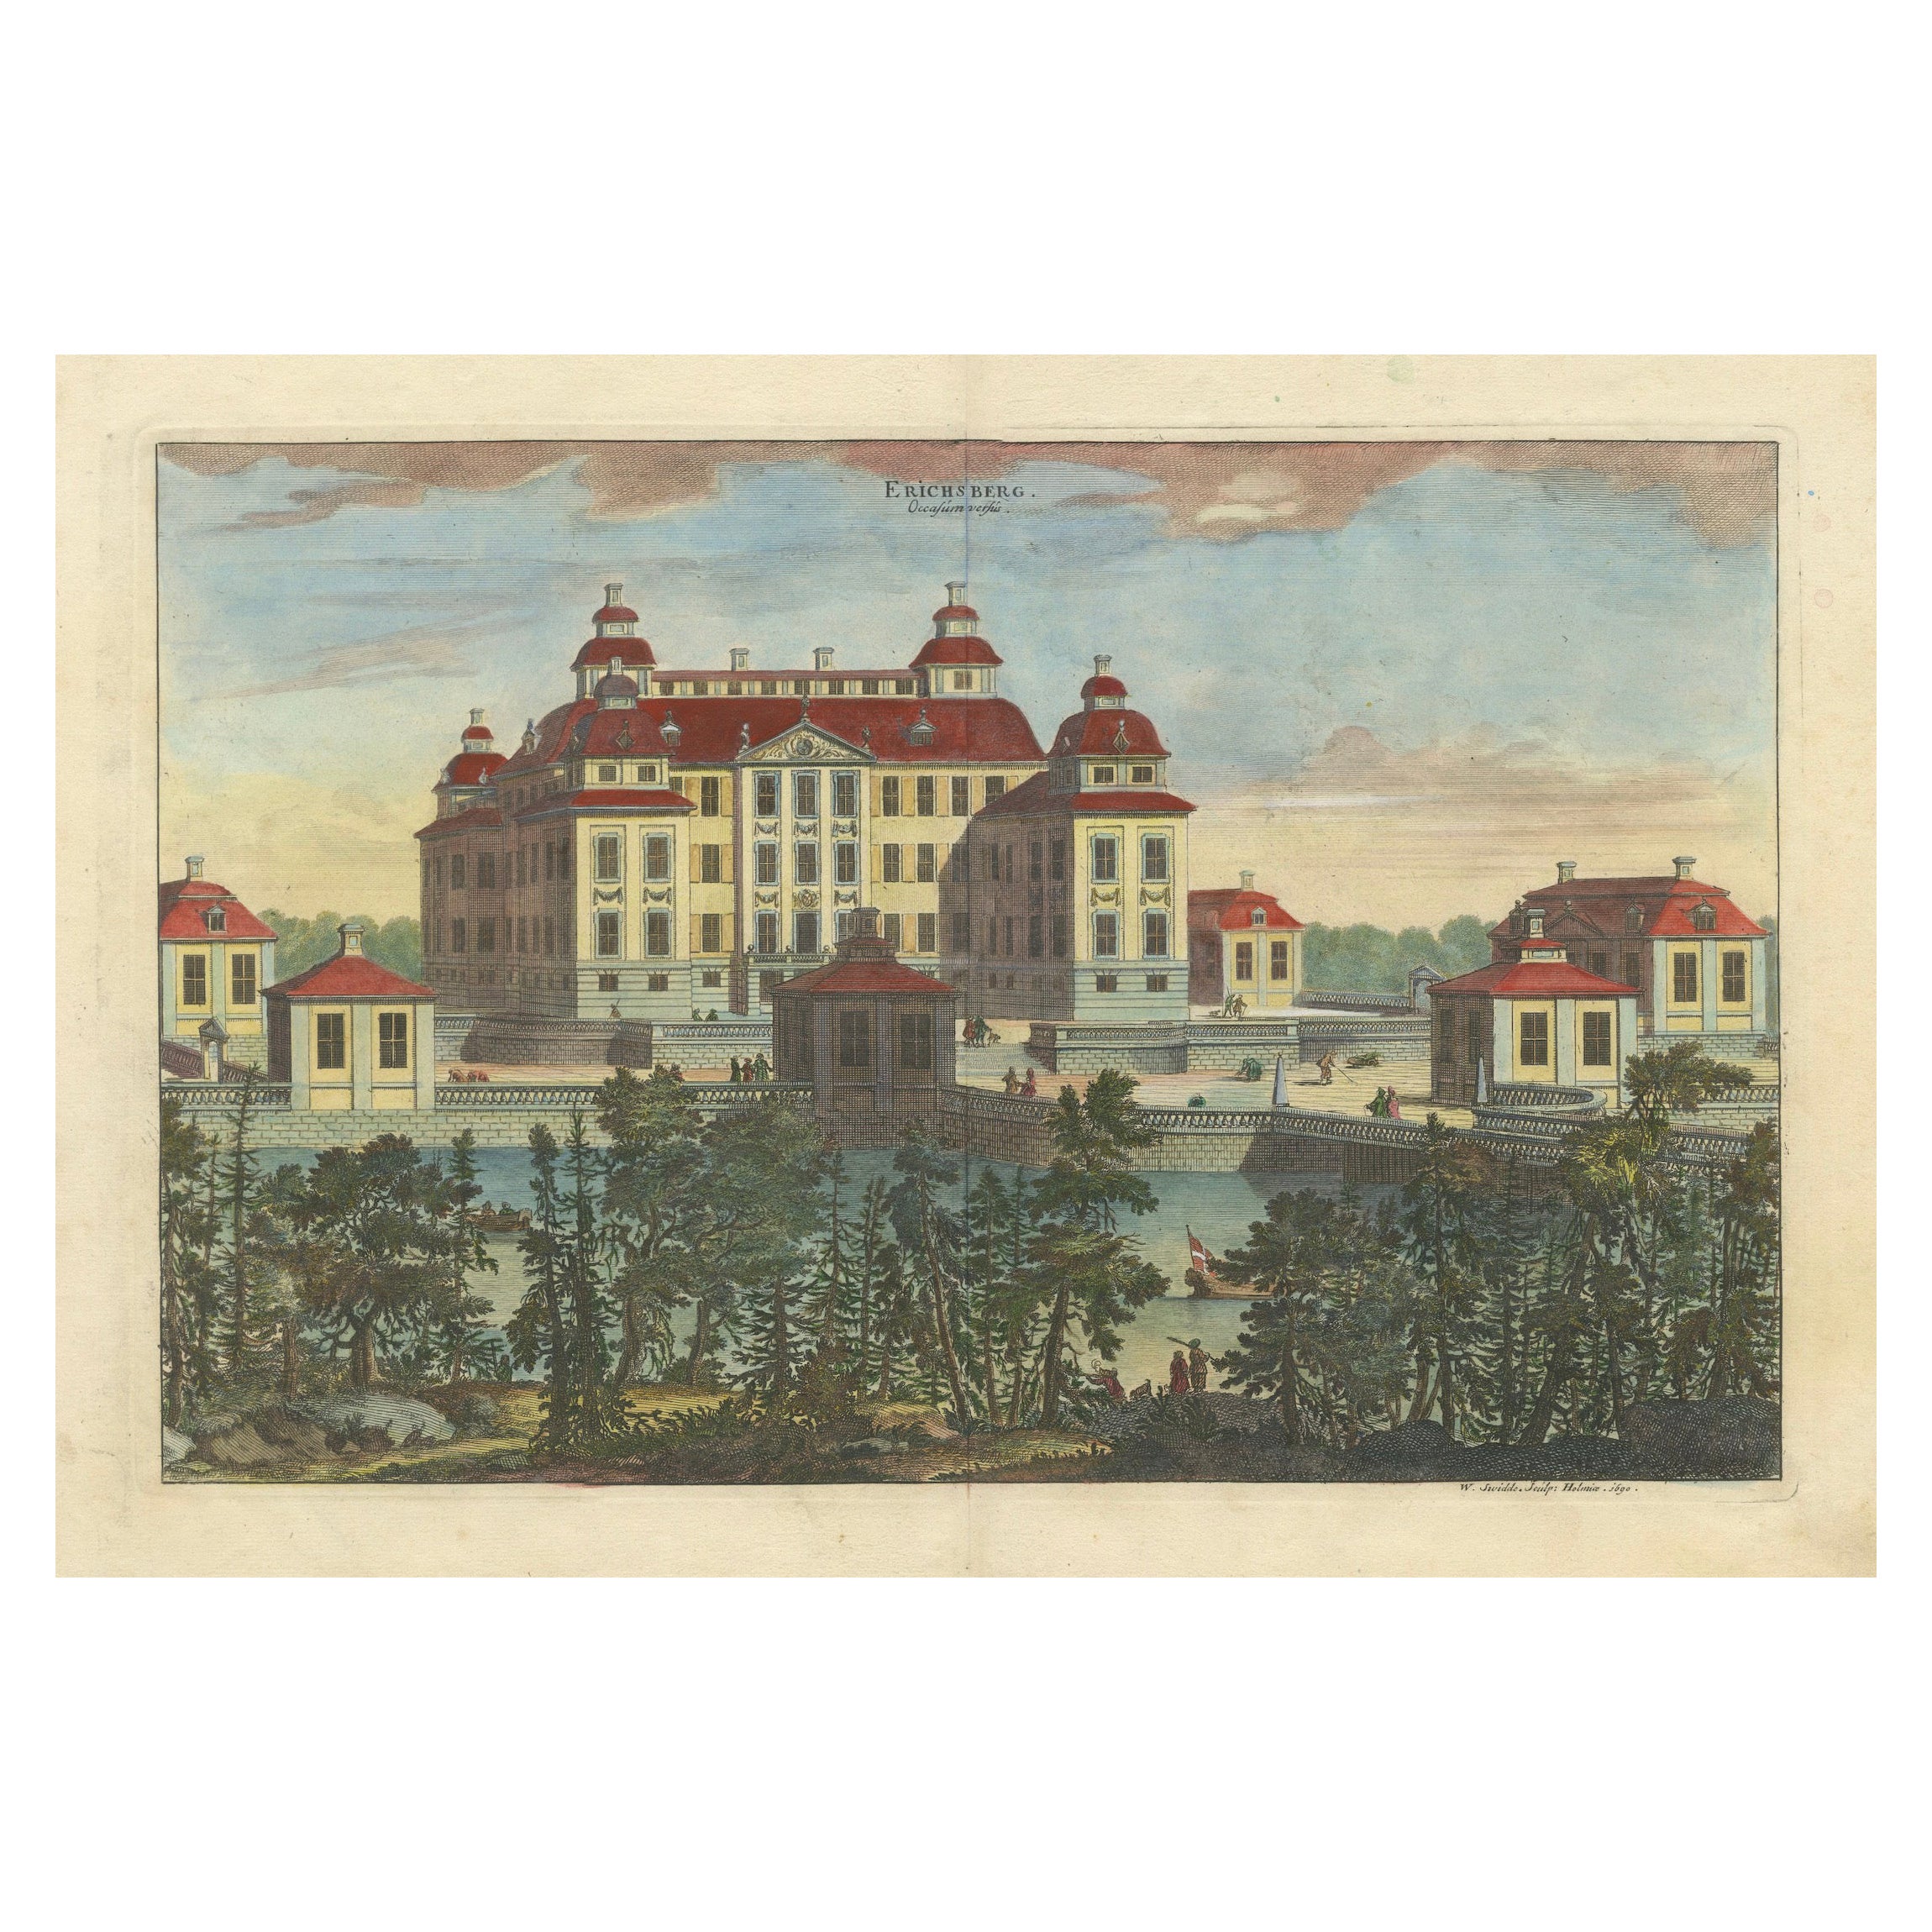 Barocke Splendor: Ericsberg Castle in Swidde's Suecia Antiqua et Hodierna, 1690